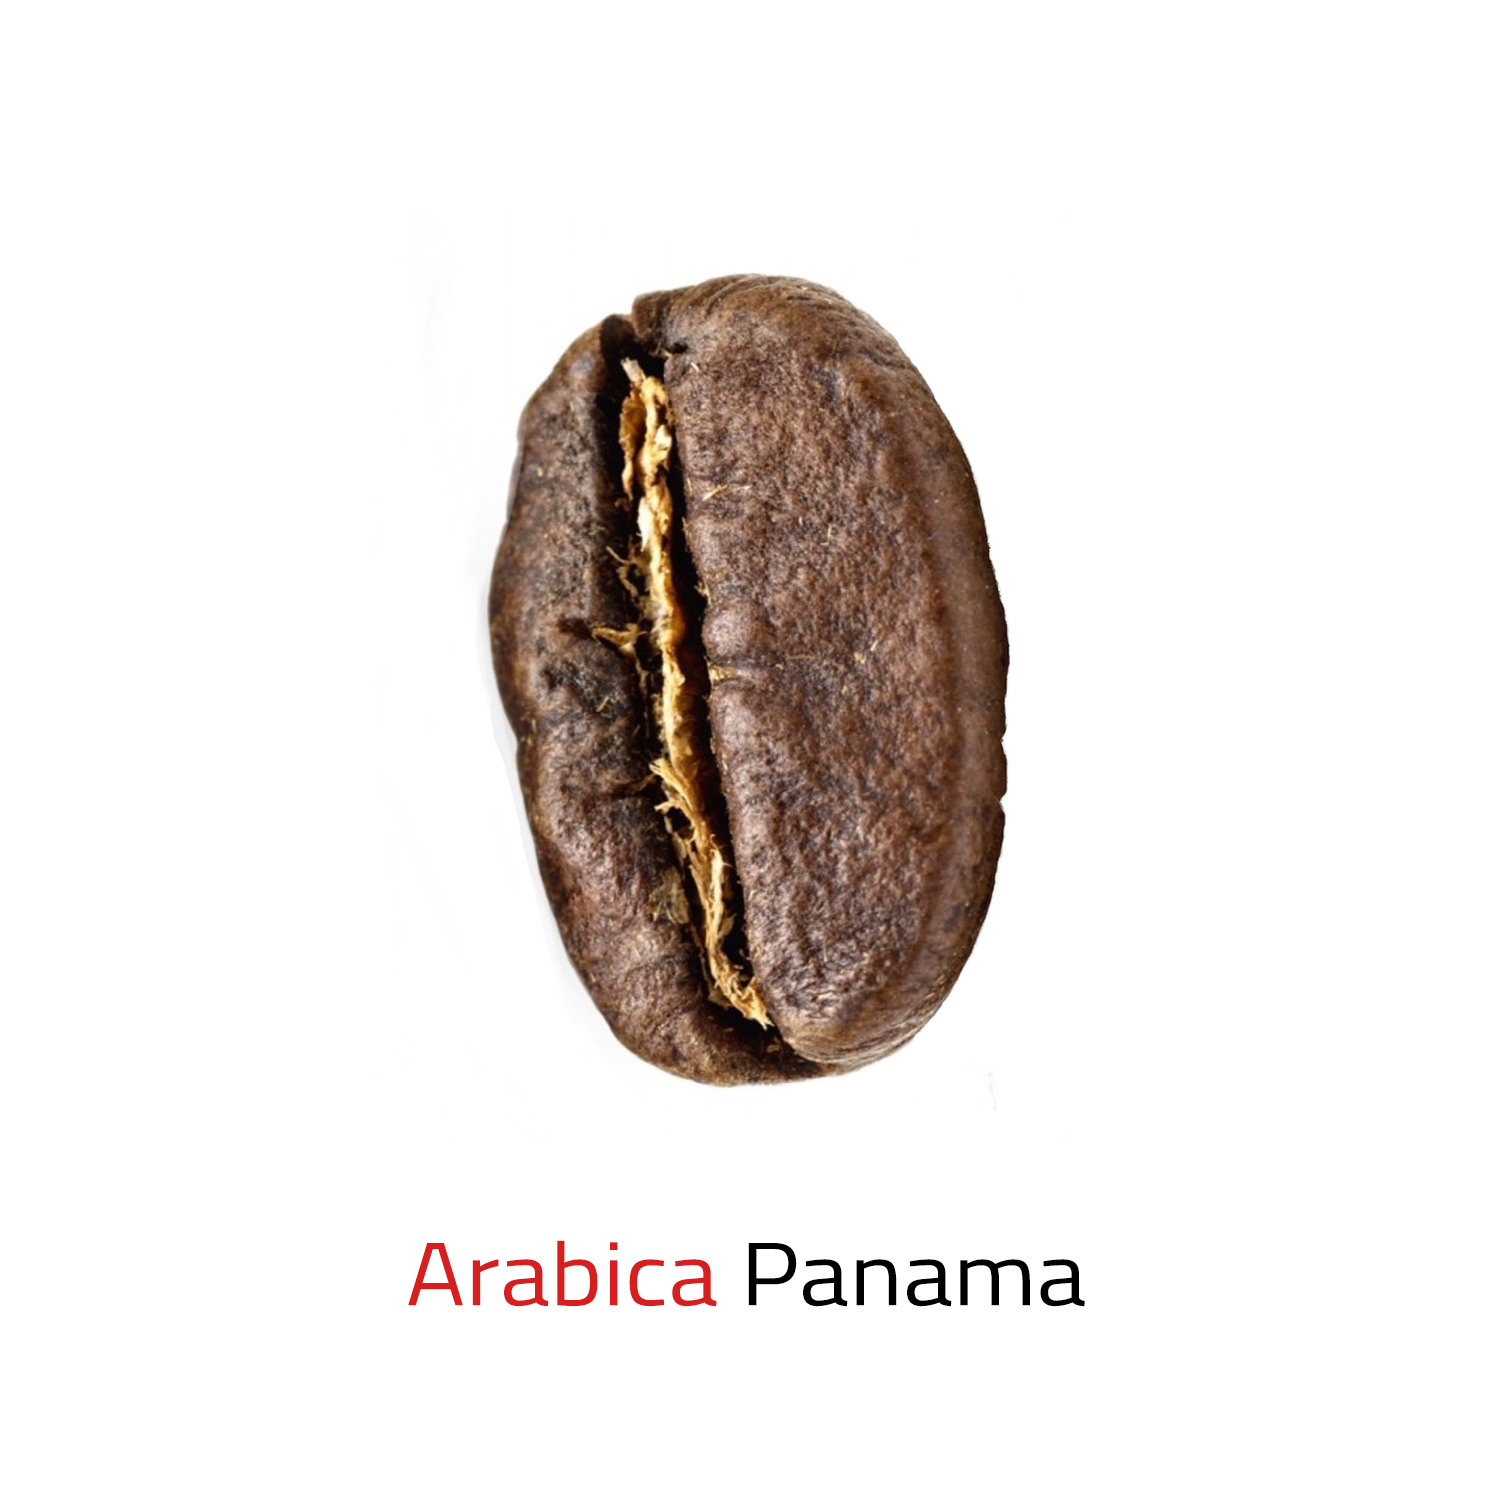 Čerstvě pražená mletá káva arabica Panama 